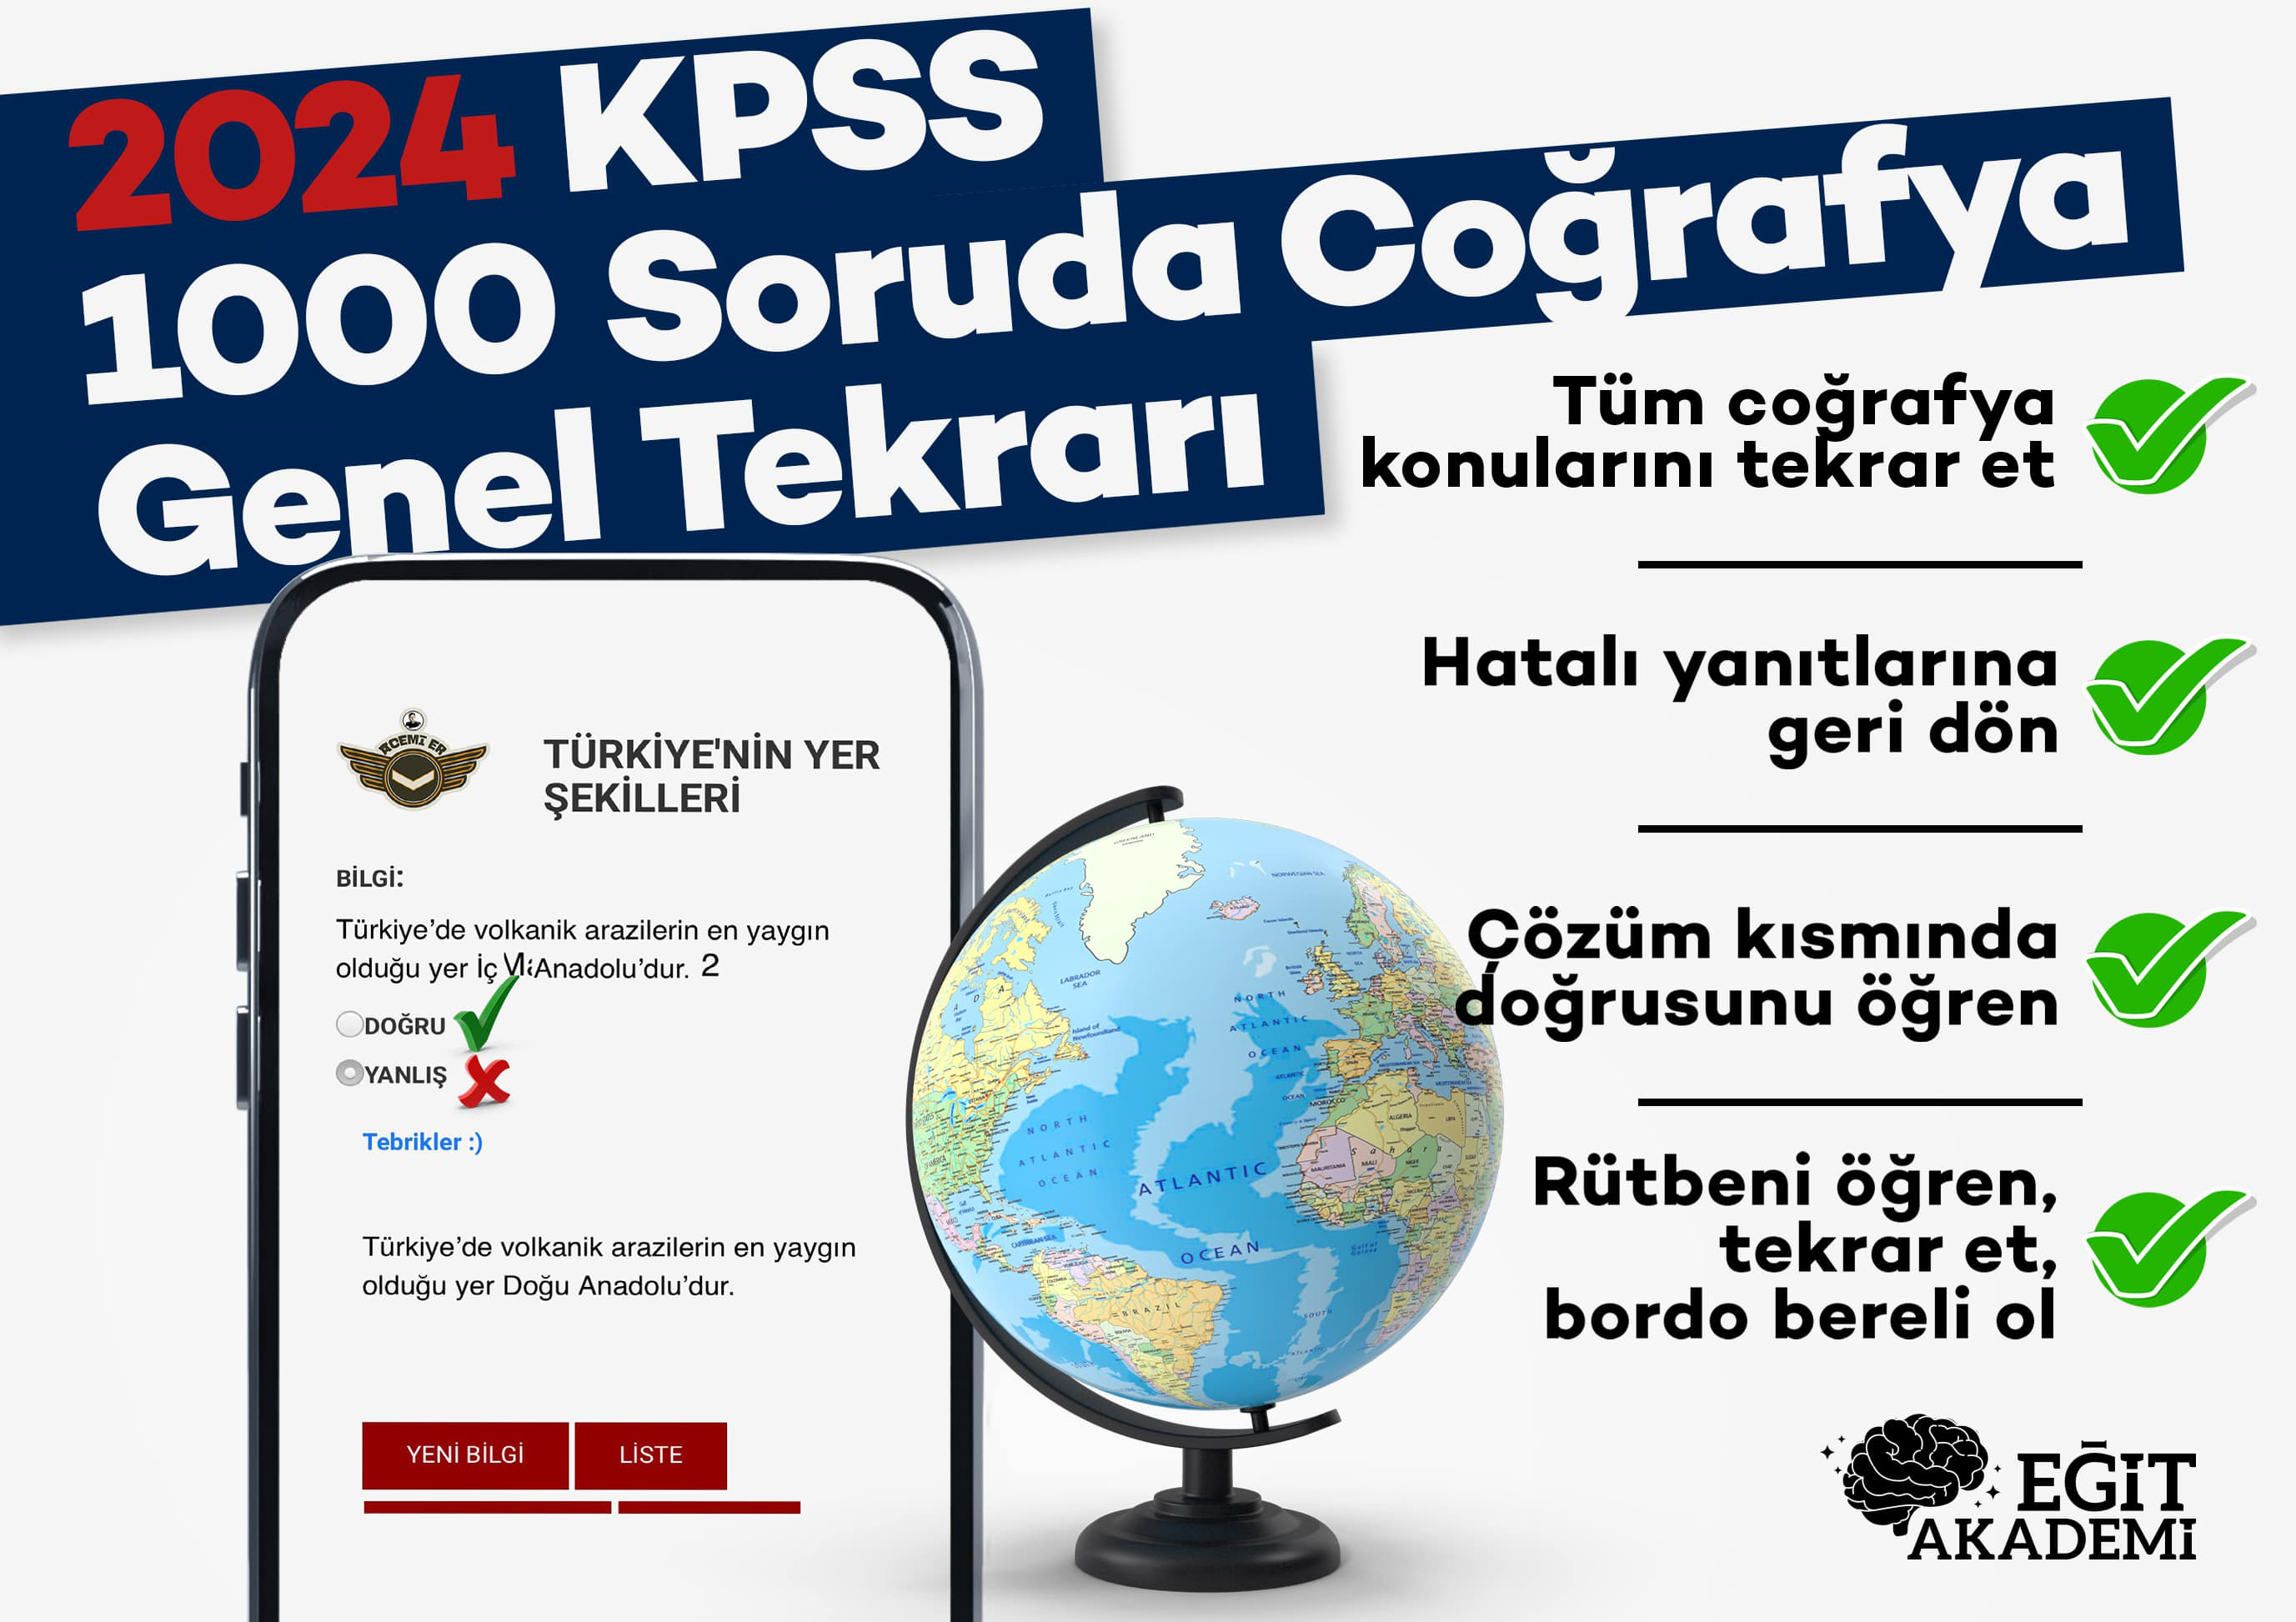 2024 KPSS COĞRAFYA 1000 SORUDA GENEL TEKRAR